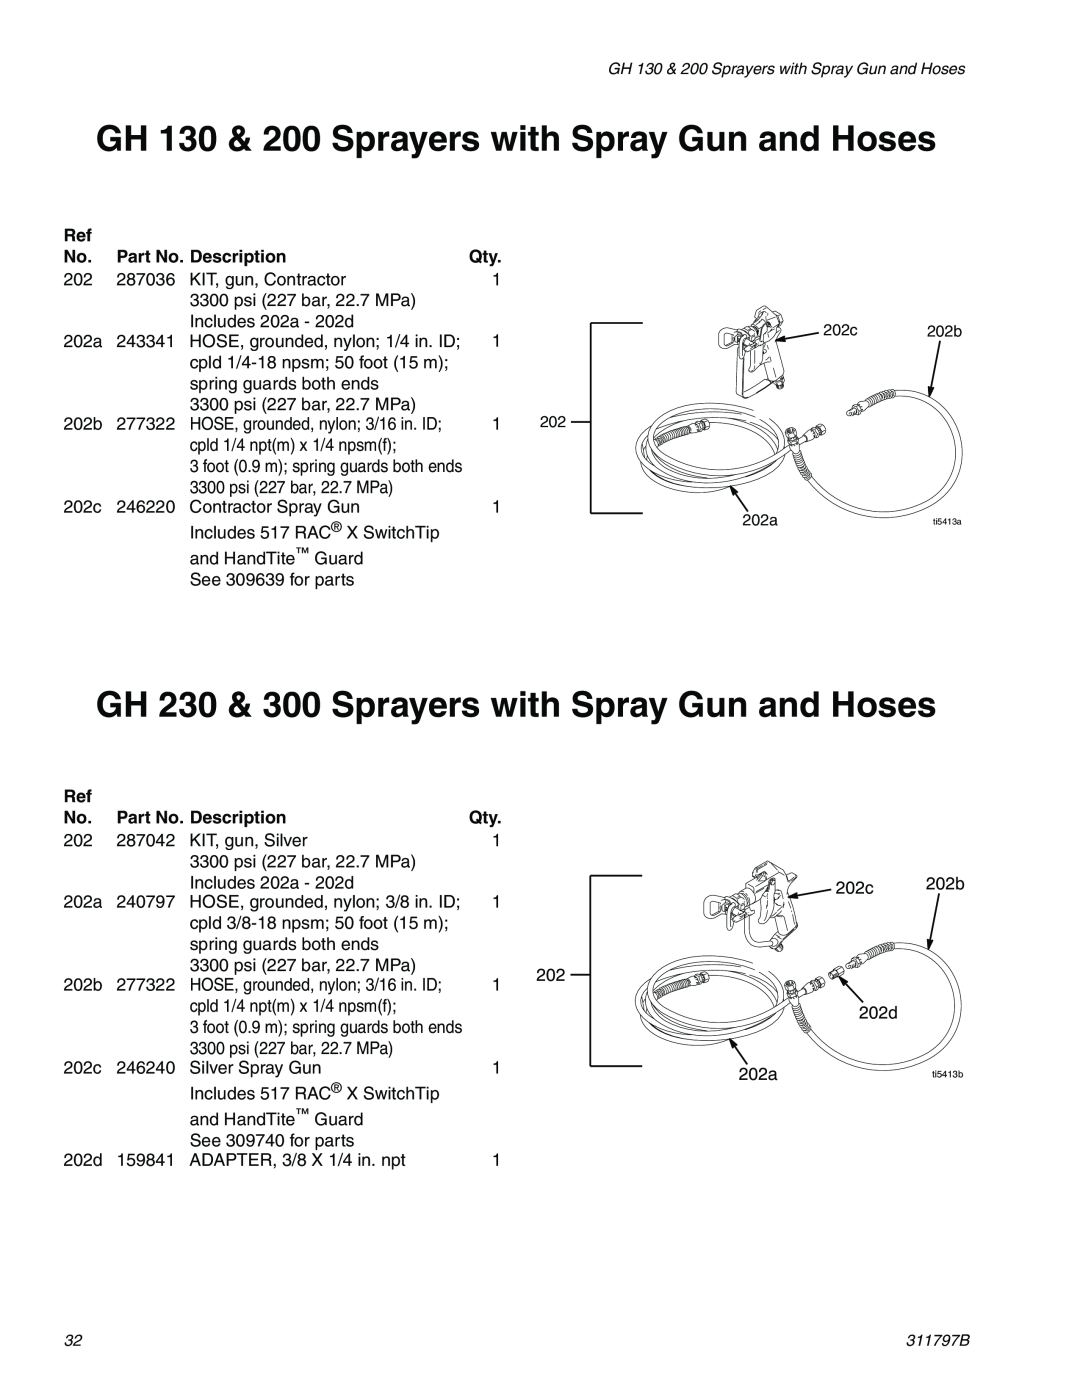 Uniden GH 200, GH 300 GH 130 & 200 Sprayers with Spray Gun and Hoses, GH 230 & 300 Sprayers with Spray Gun and Hoses 